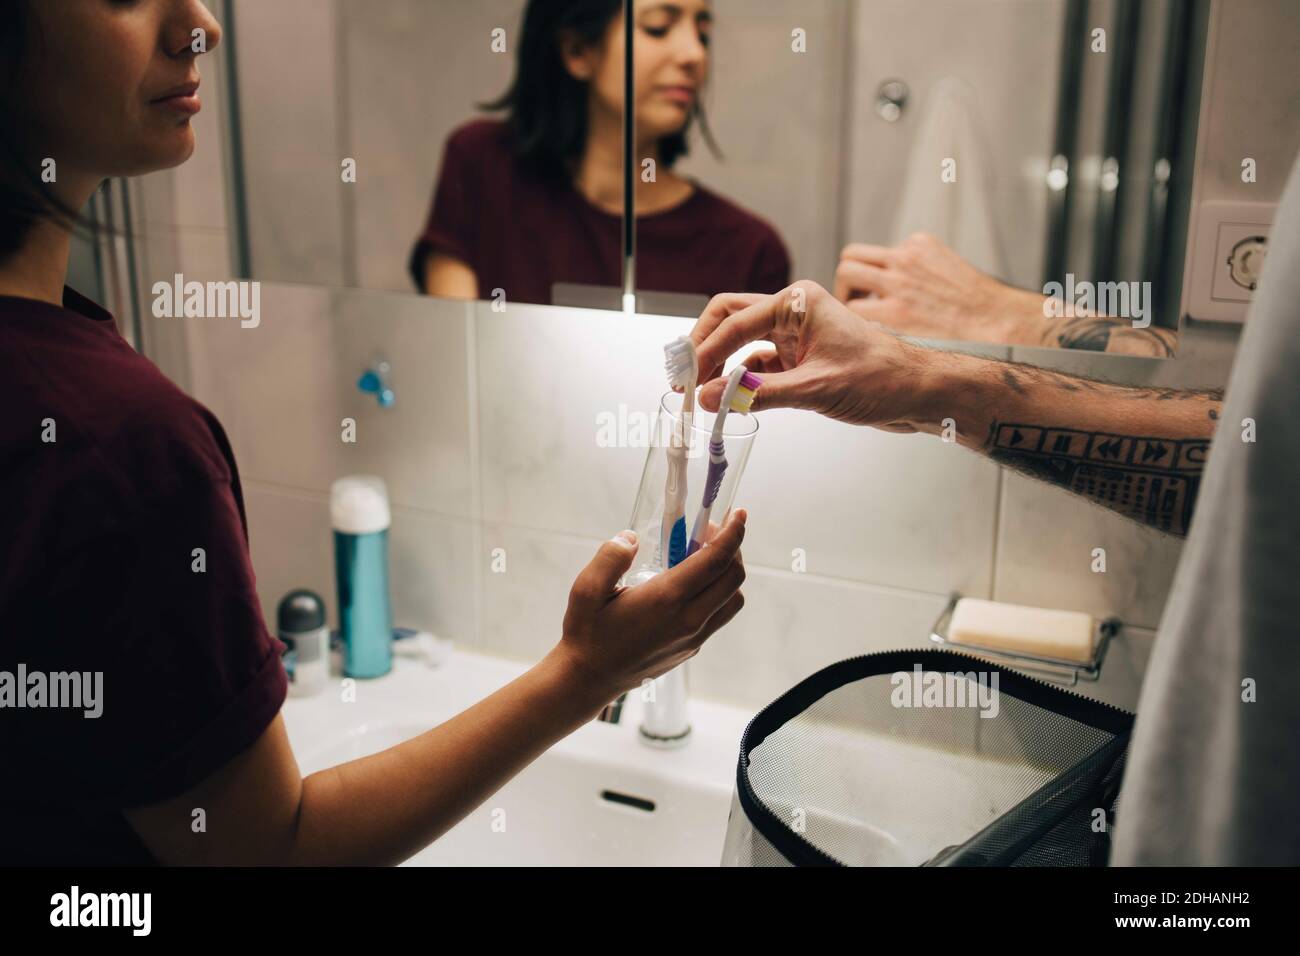 Homme et femme tenant les brosses à dents dans un récipient à l'évier éclairé Banque D'Images